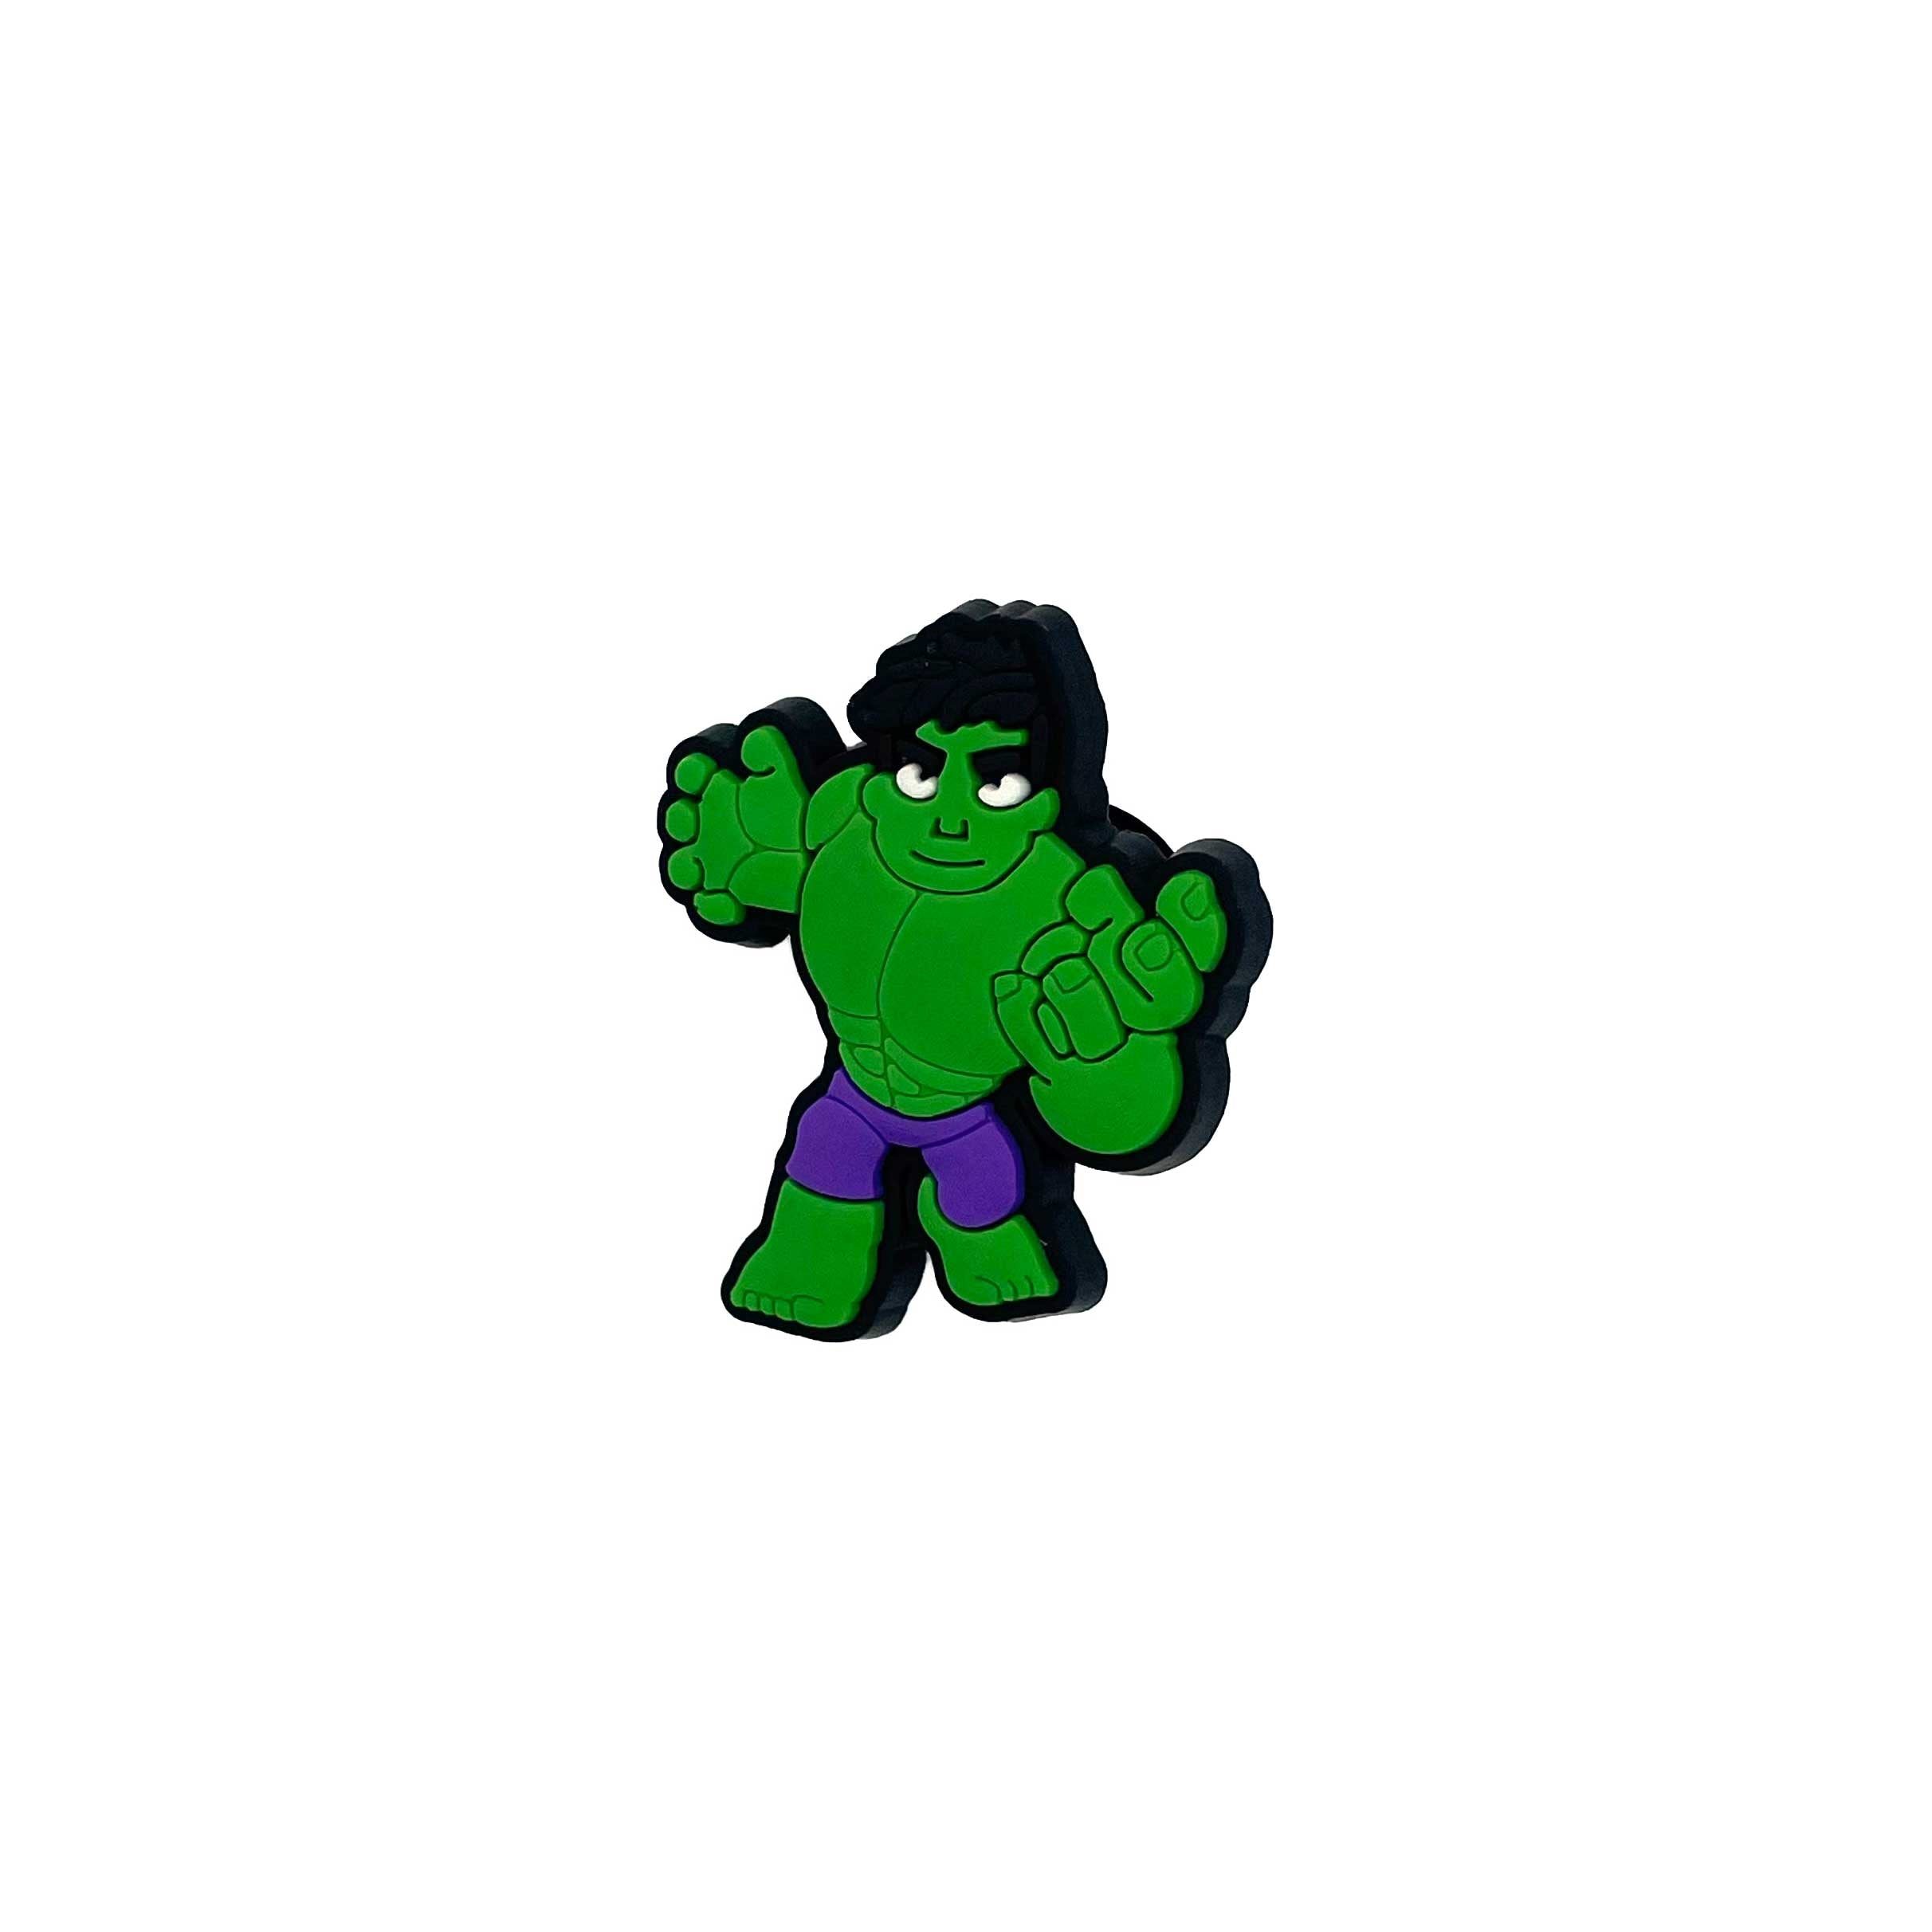 Young Hulk 2